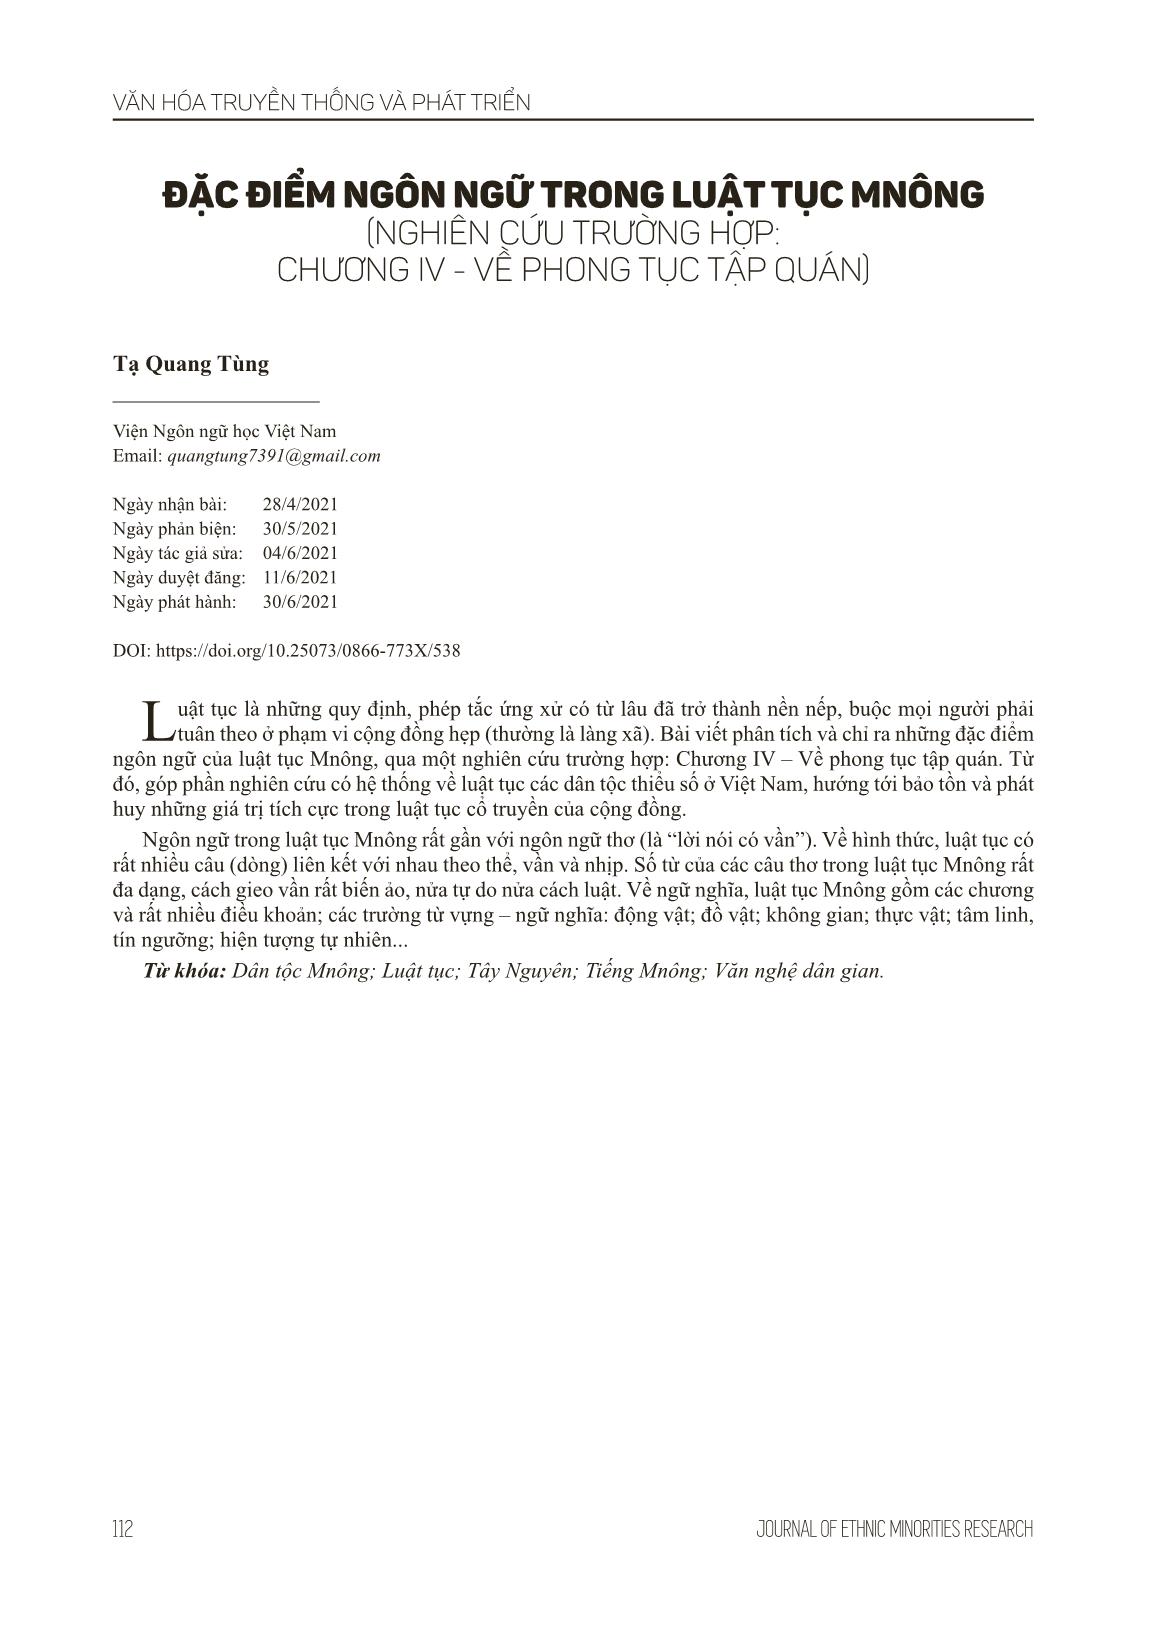 Đặc điểm ngôn ngữ trong luật tục Mnông (Nghiên cứu trường hợp: chương IV - Về phong tục tập quán) trang 9